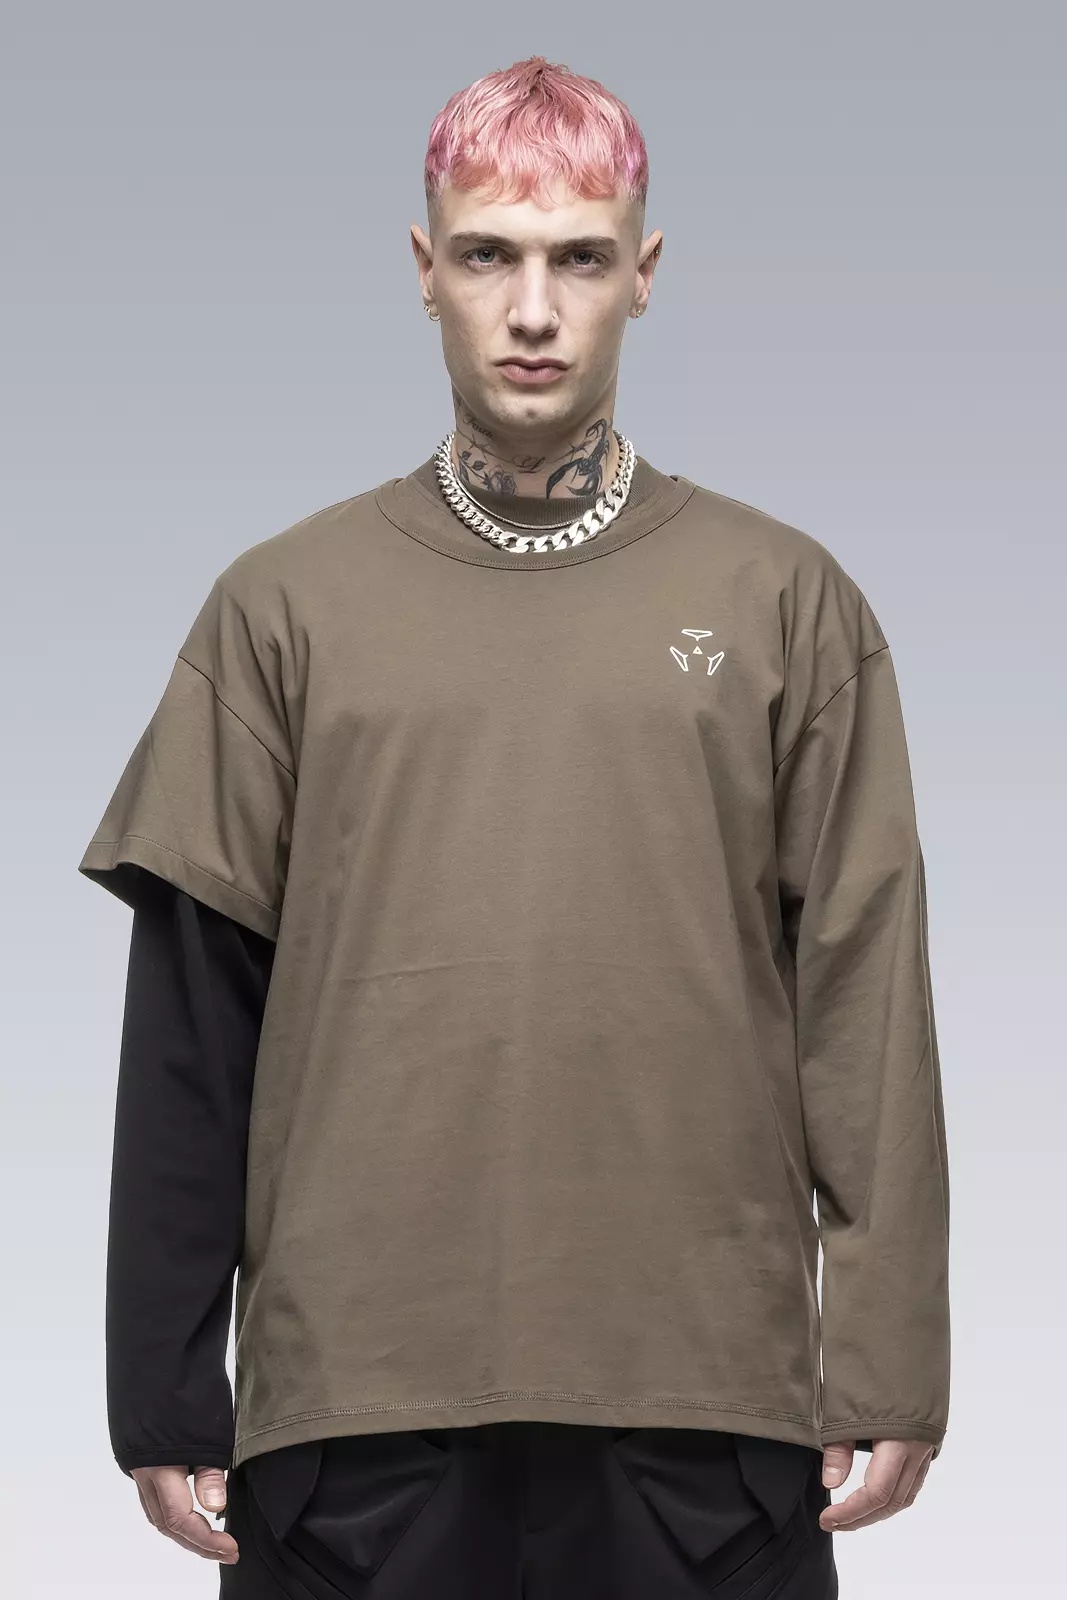 S29-PR-A 100% Organic Cotton Long Sleeve T-shirt RAF Green/Black - 1